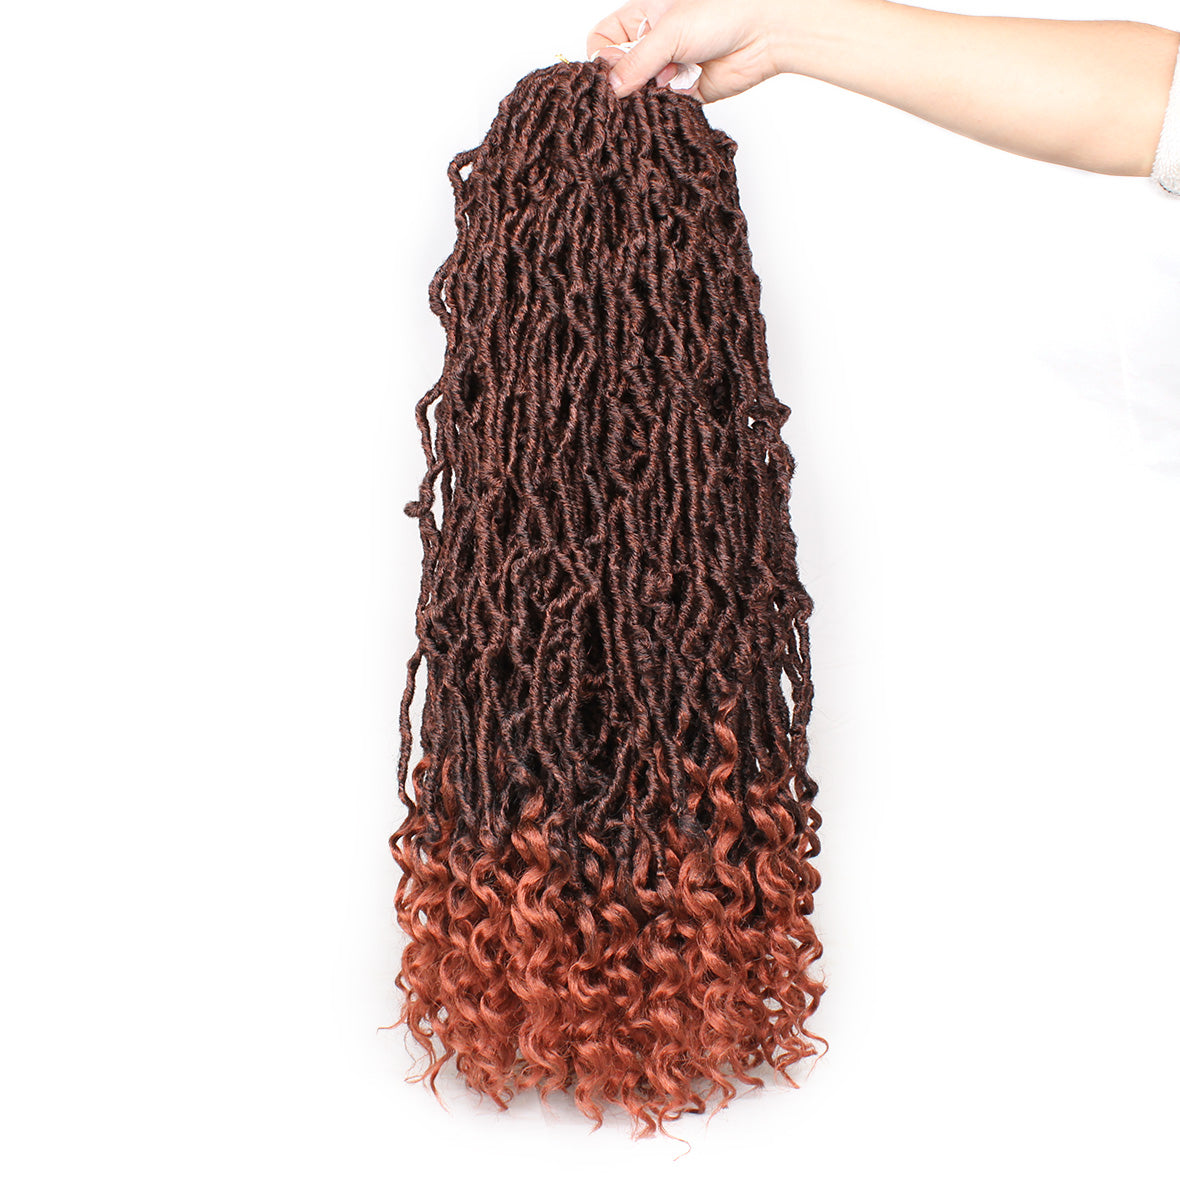 Xtrend Goddess Locs Crochet Hair Curly Faux Locs Crochet Hair Wavy Nu Locs with Curly Ends Synthetic Braiding Hair